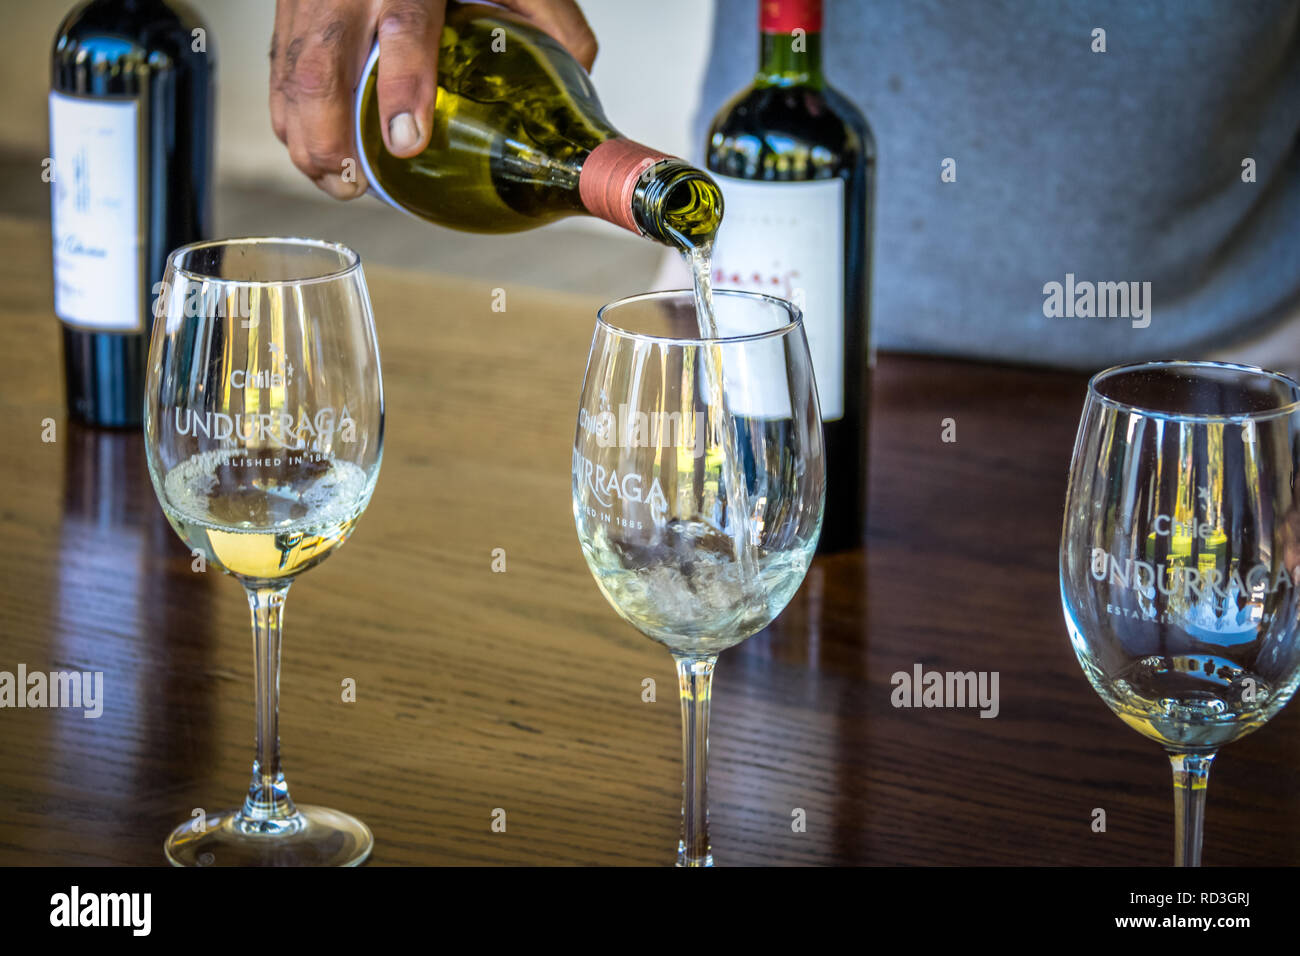 Glas Wein an undurraga Weinberg - Santiago, Chile Stockfoto